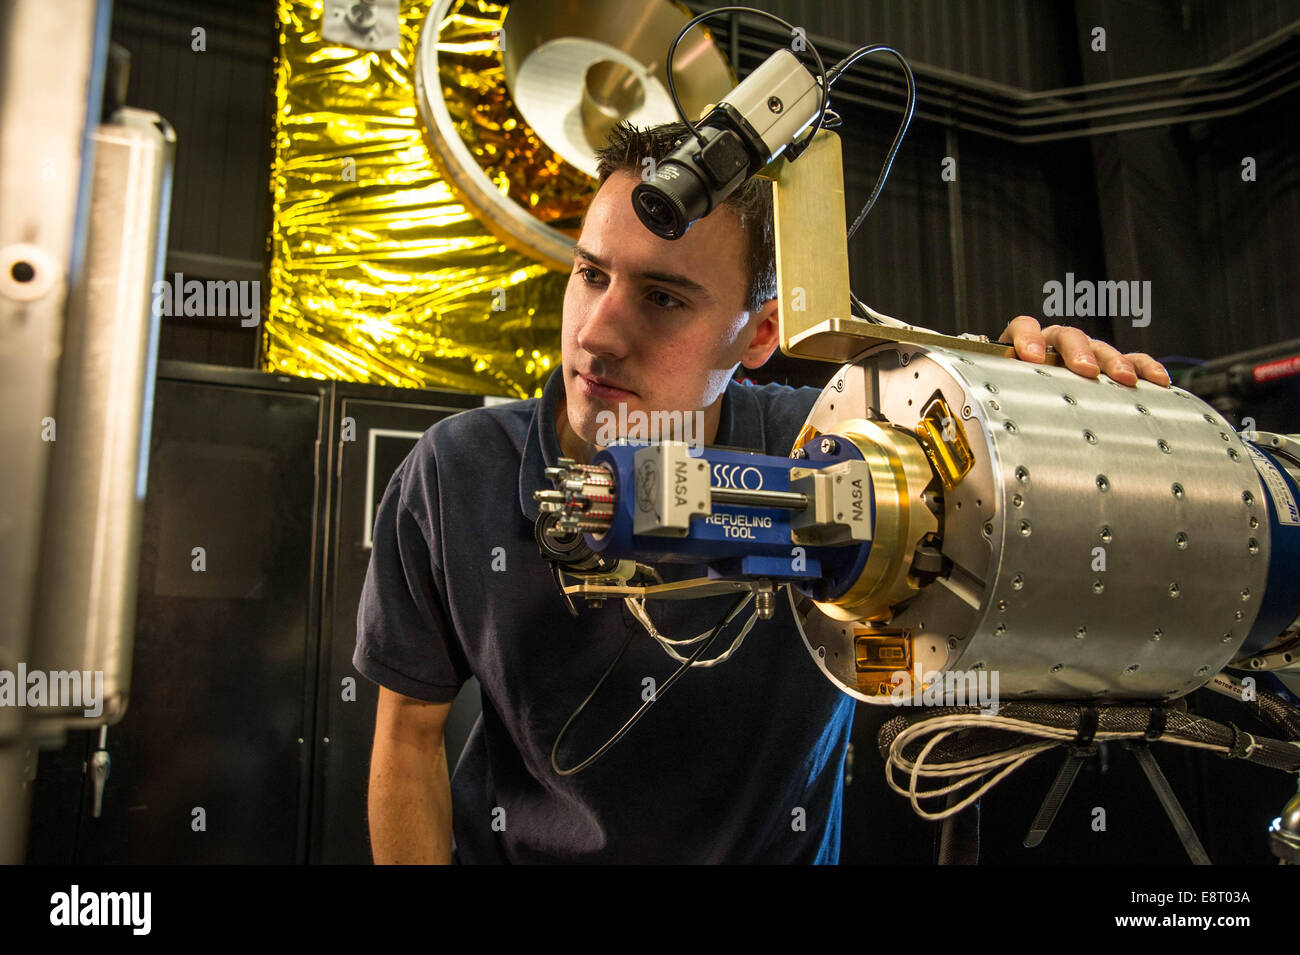 RROxiTT führen Roboteringenieur Alex Janas mit dem Oxidationsmittel Düse Werkzeug steht, da er die Arbeit vor Ort untersucht. Stockfoto